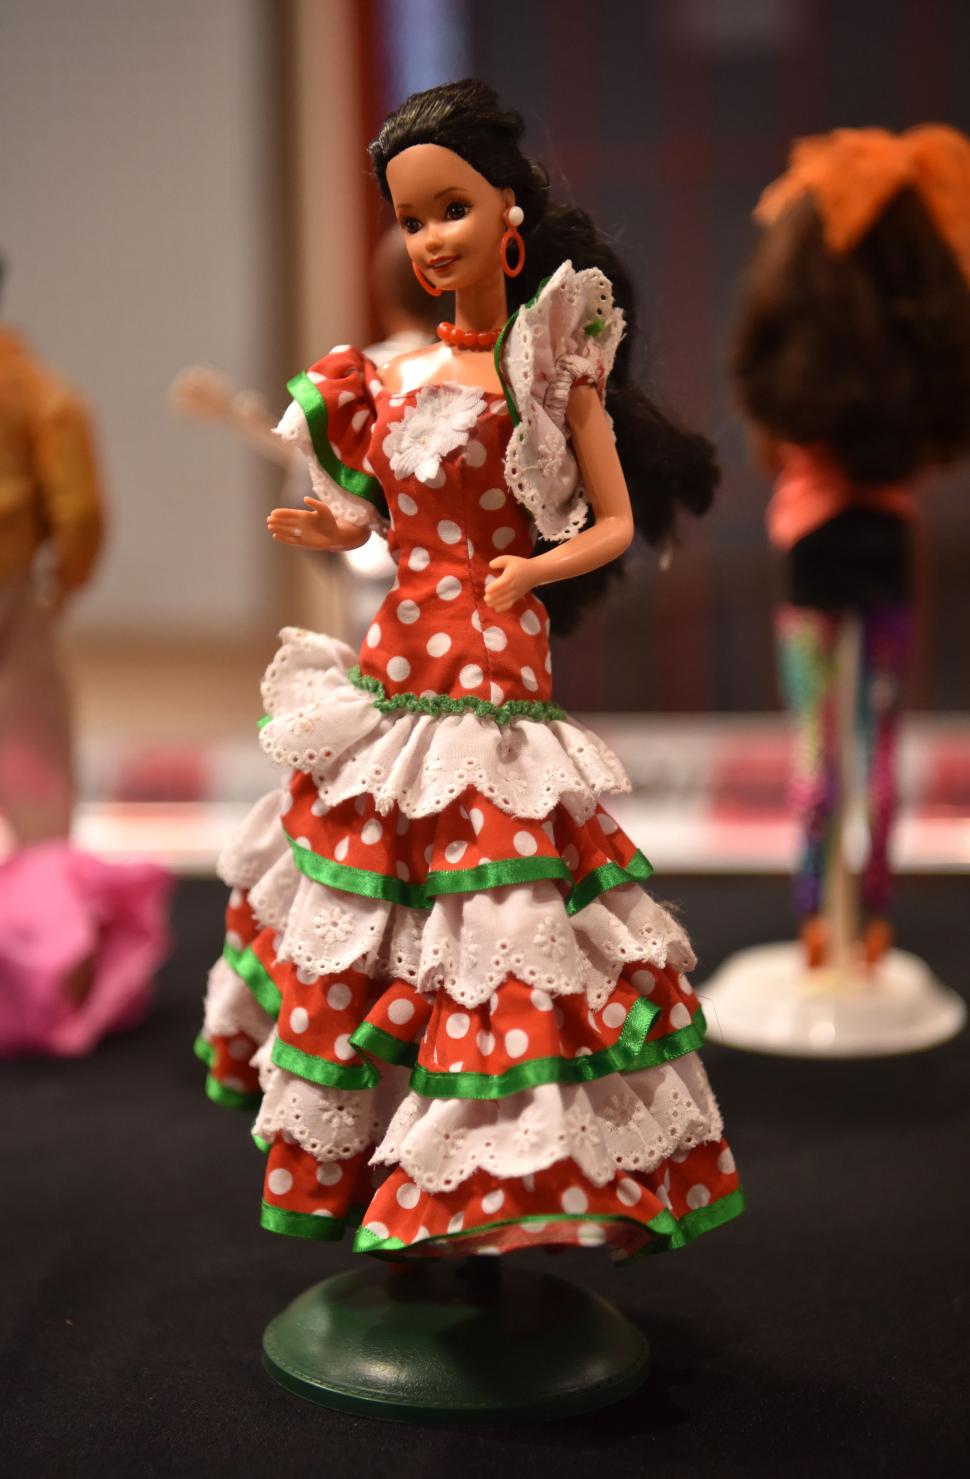 Coleccionismo rosa: muñecas de Barbie para jugar o atesorar